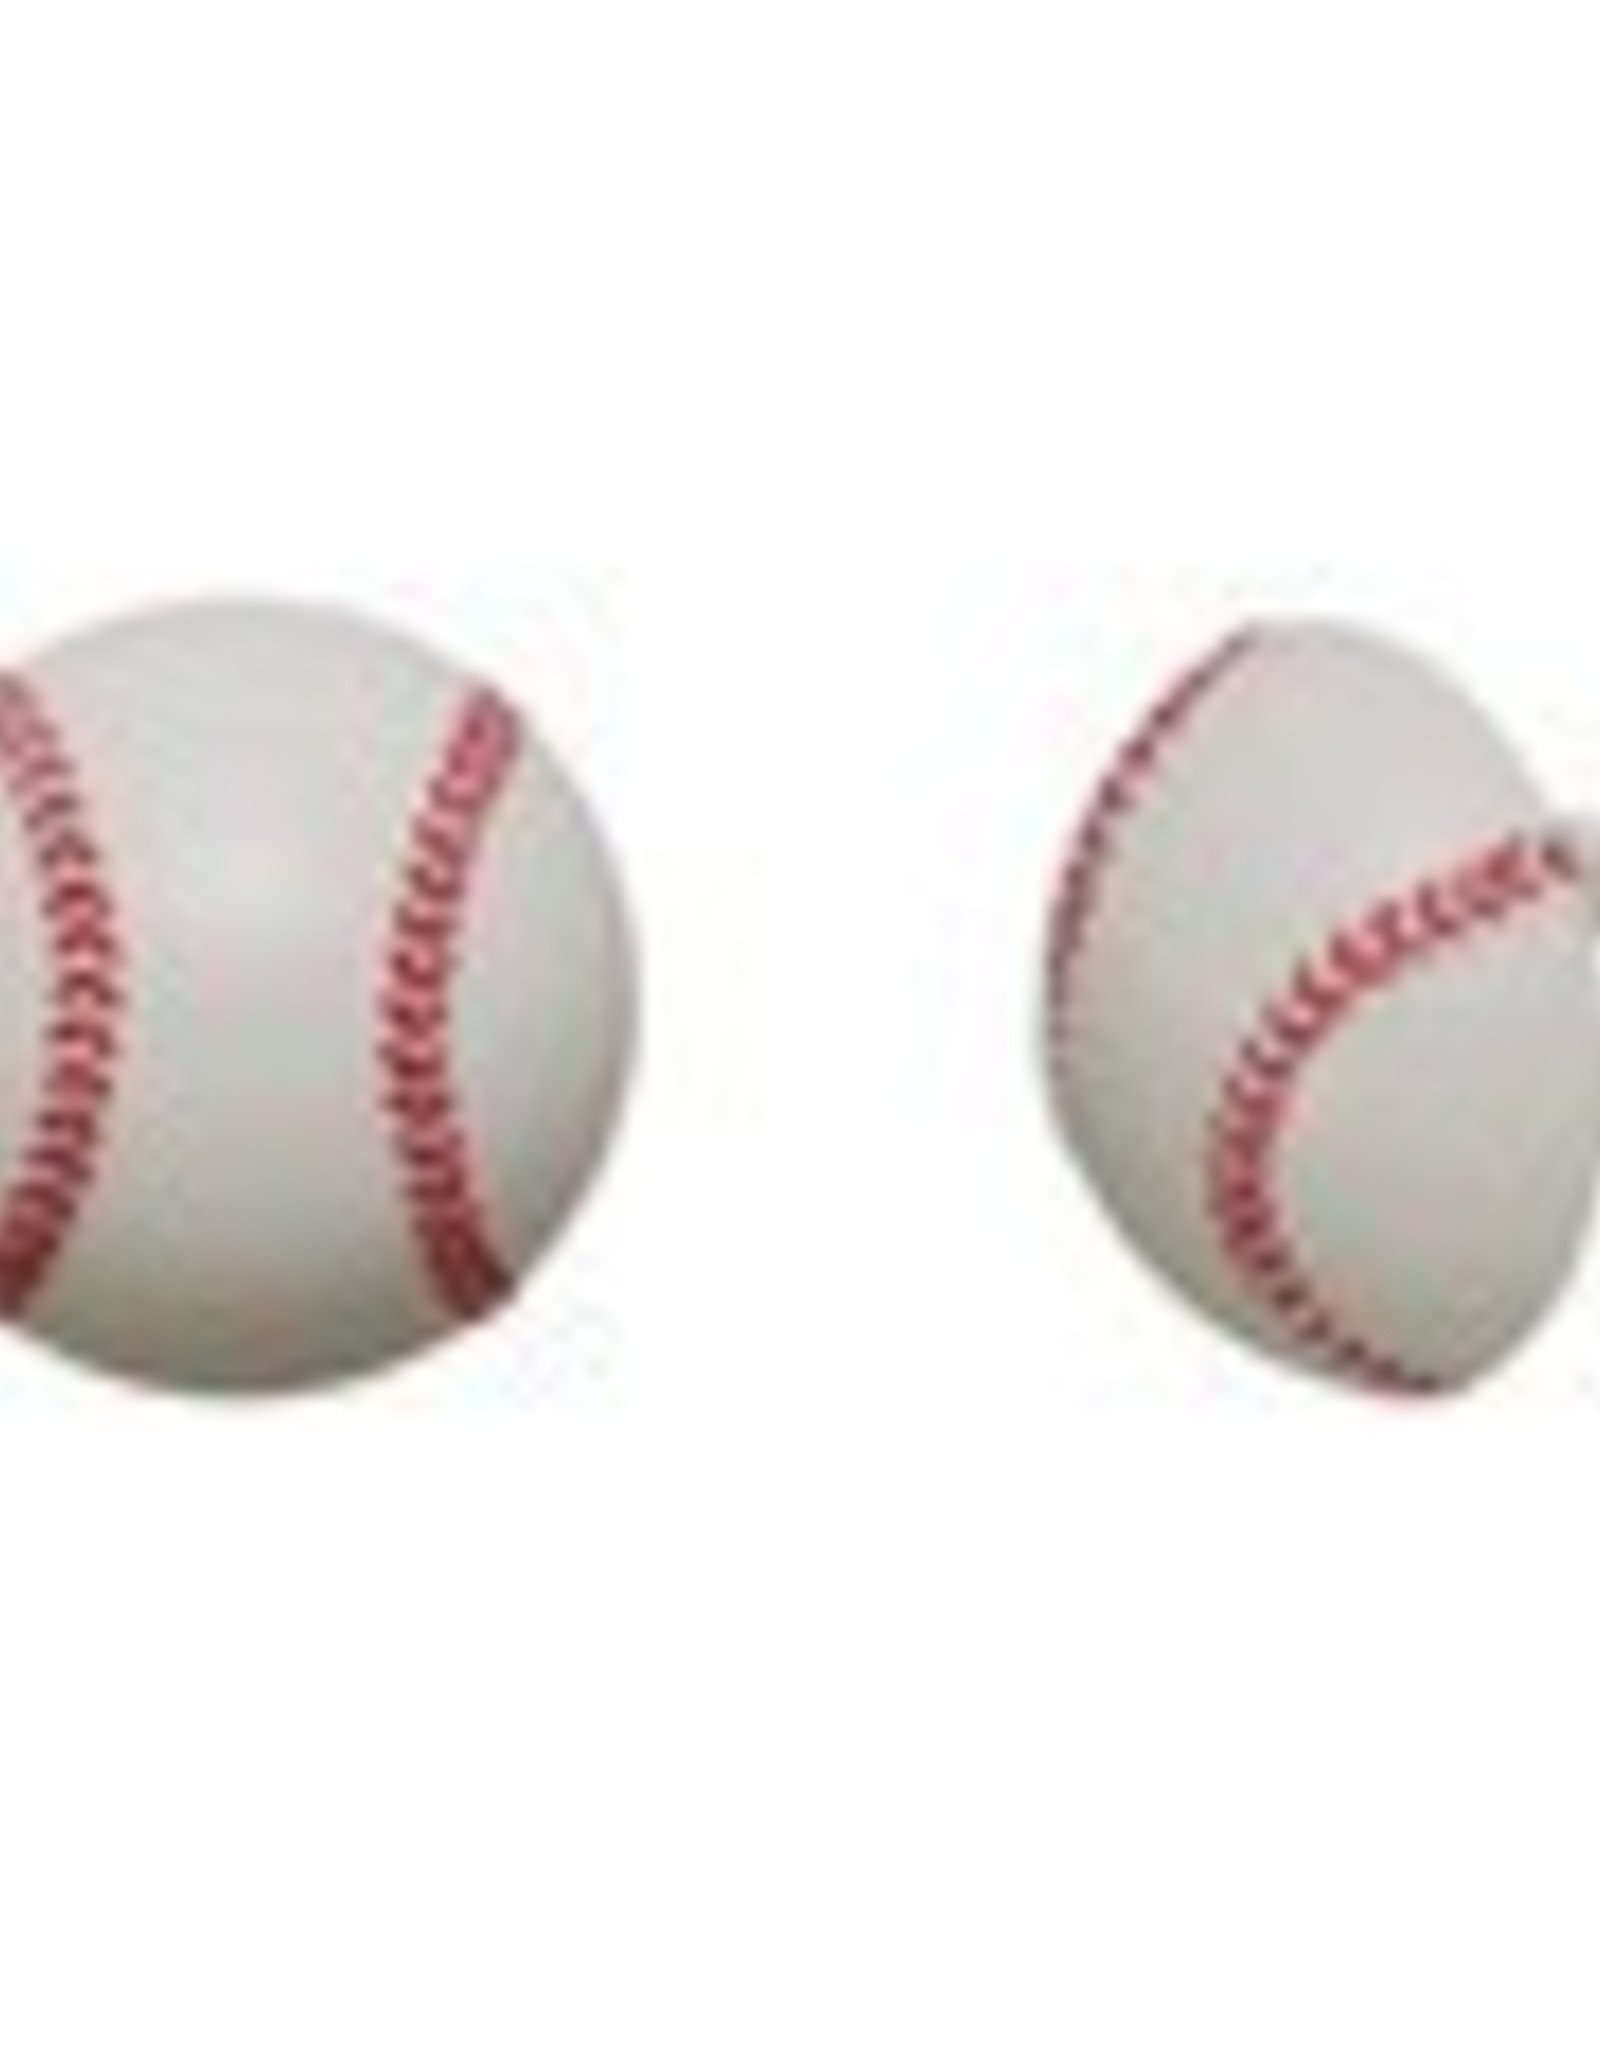 Baseball Rings (12 per pkg)